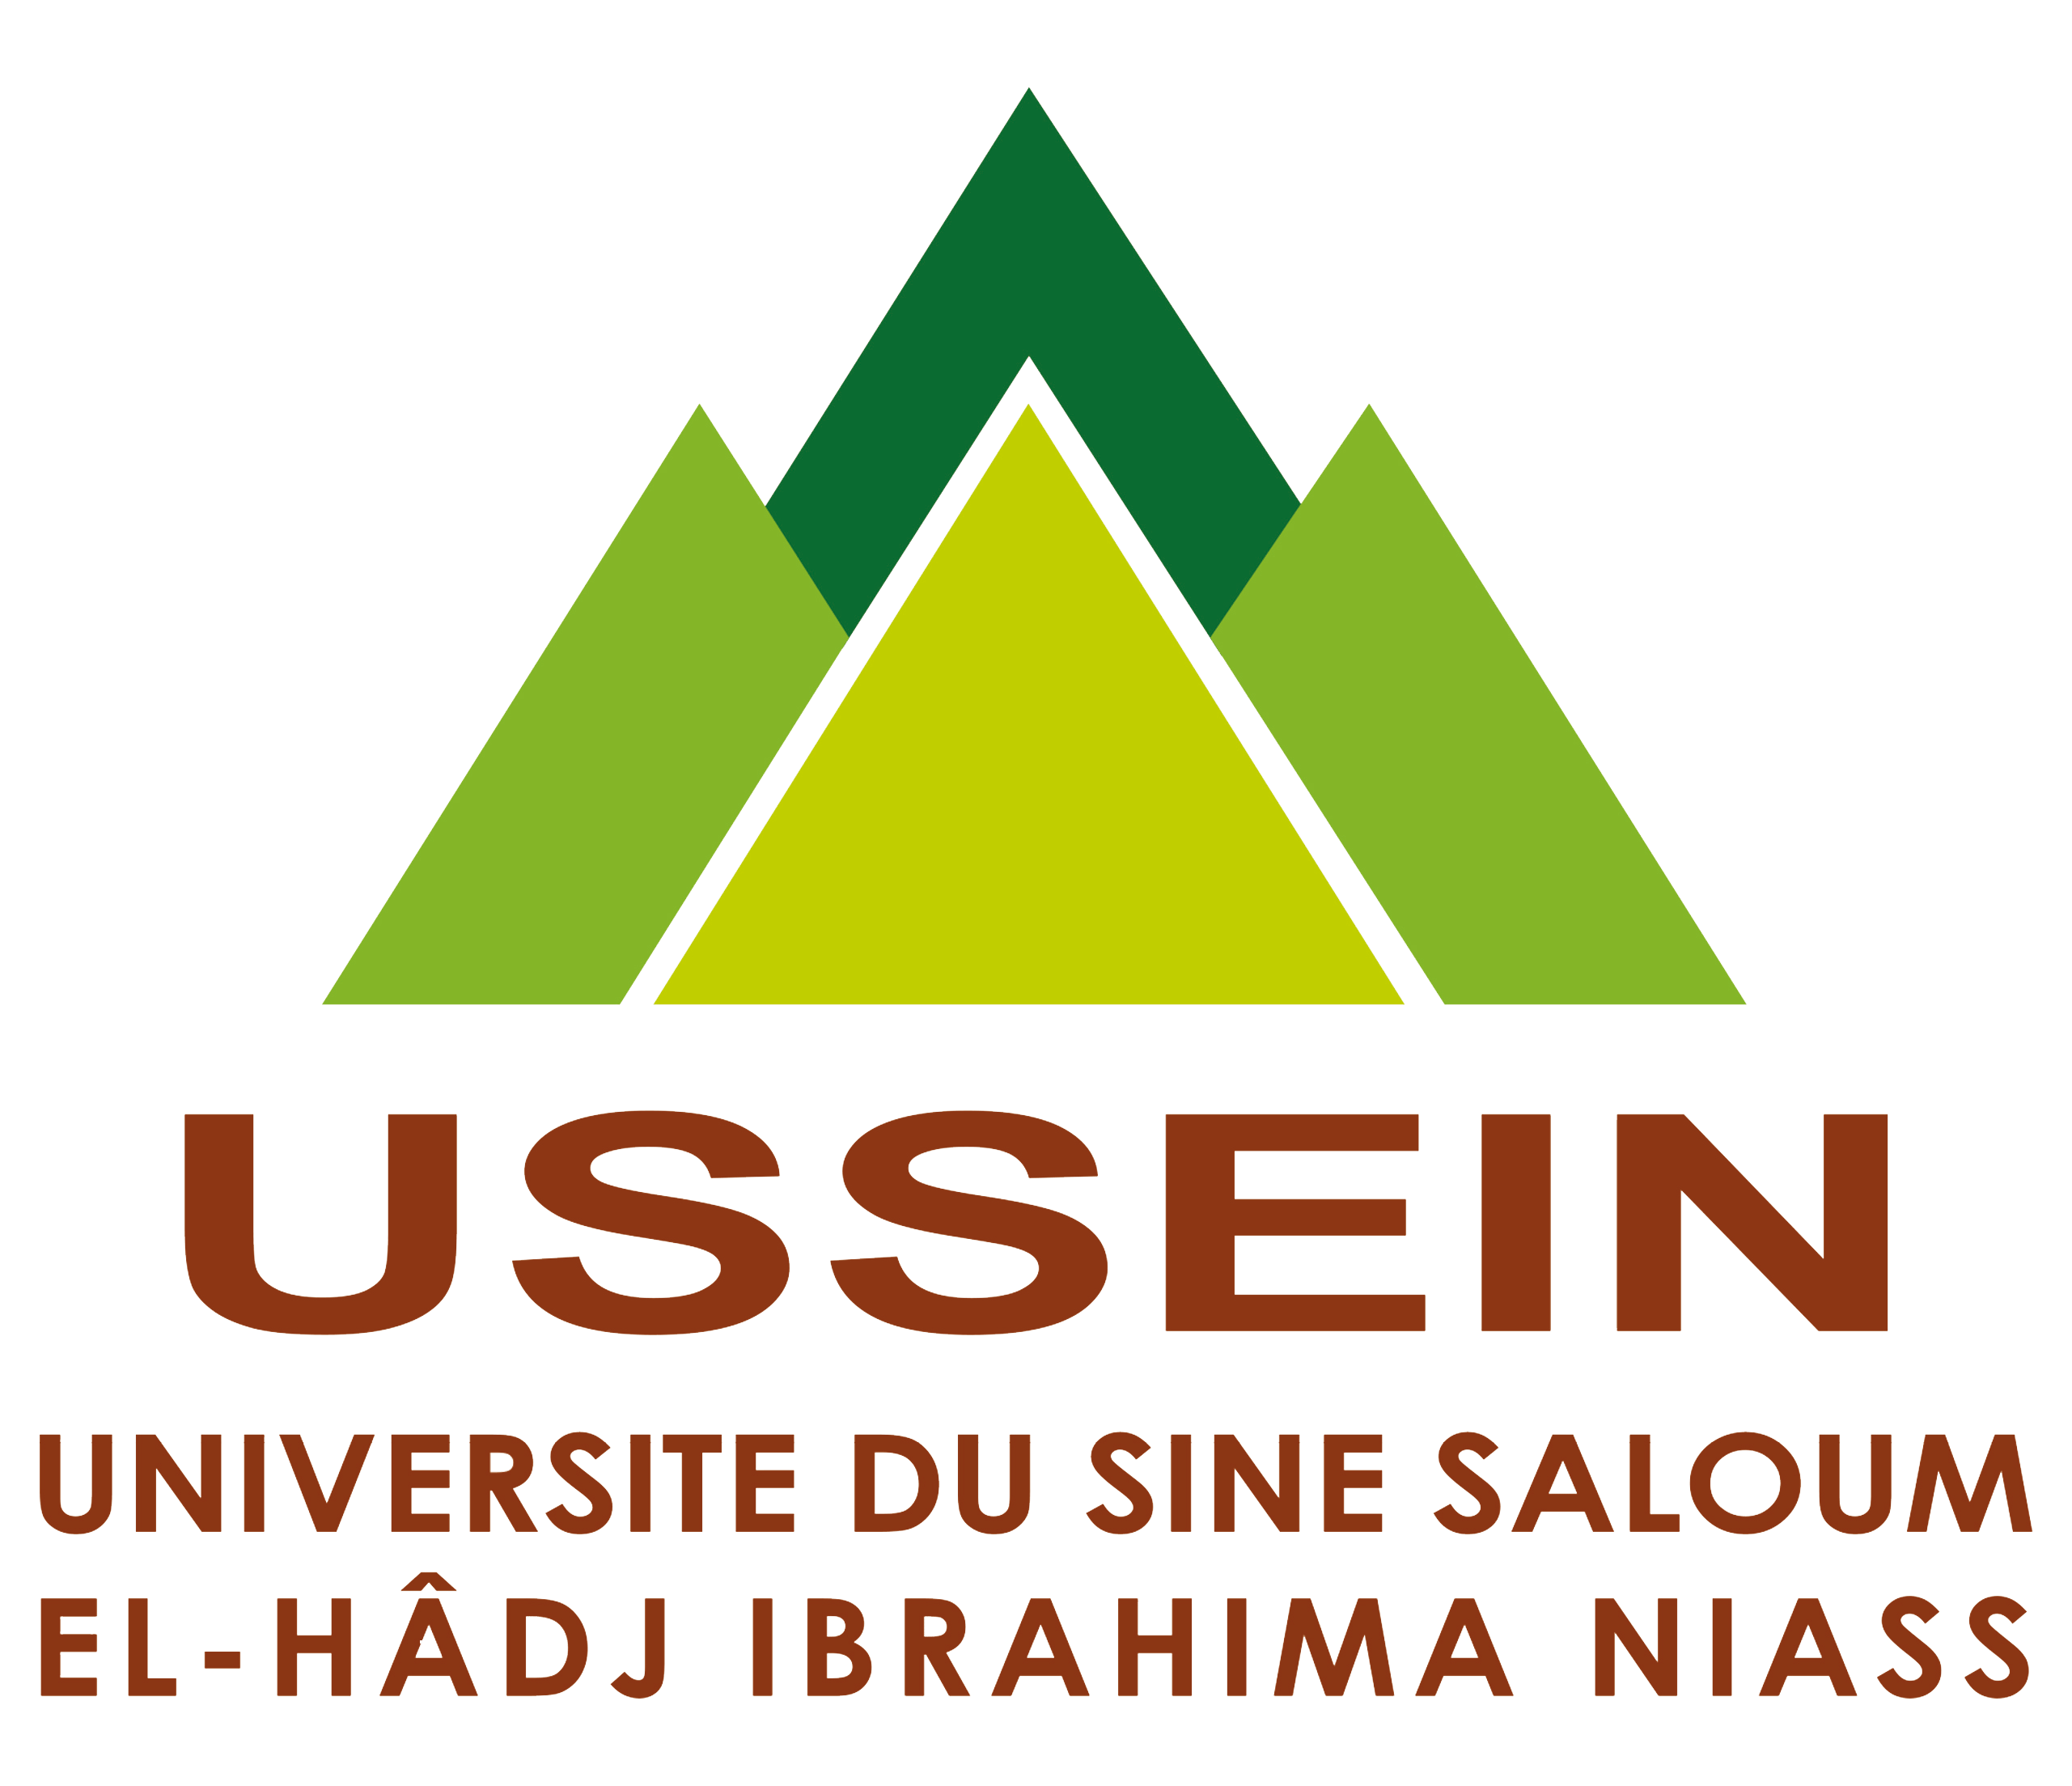 Université du Sine Saloum El-Hâdj Ibrahima NIASS - Engagement, Expérience, Excellence